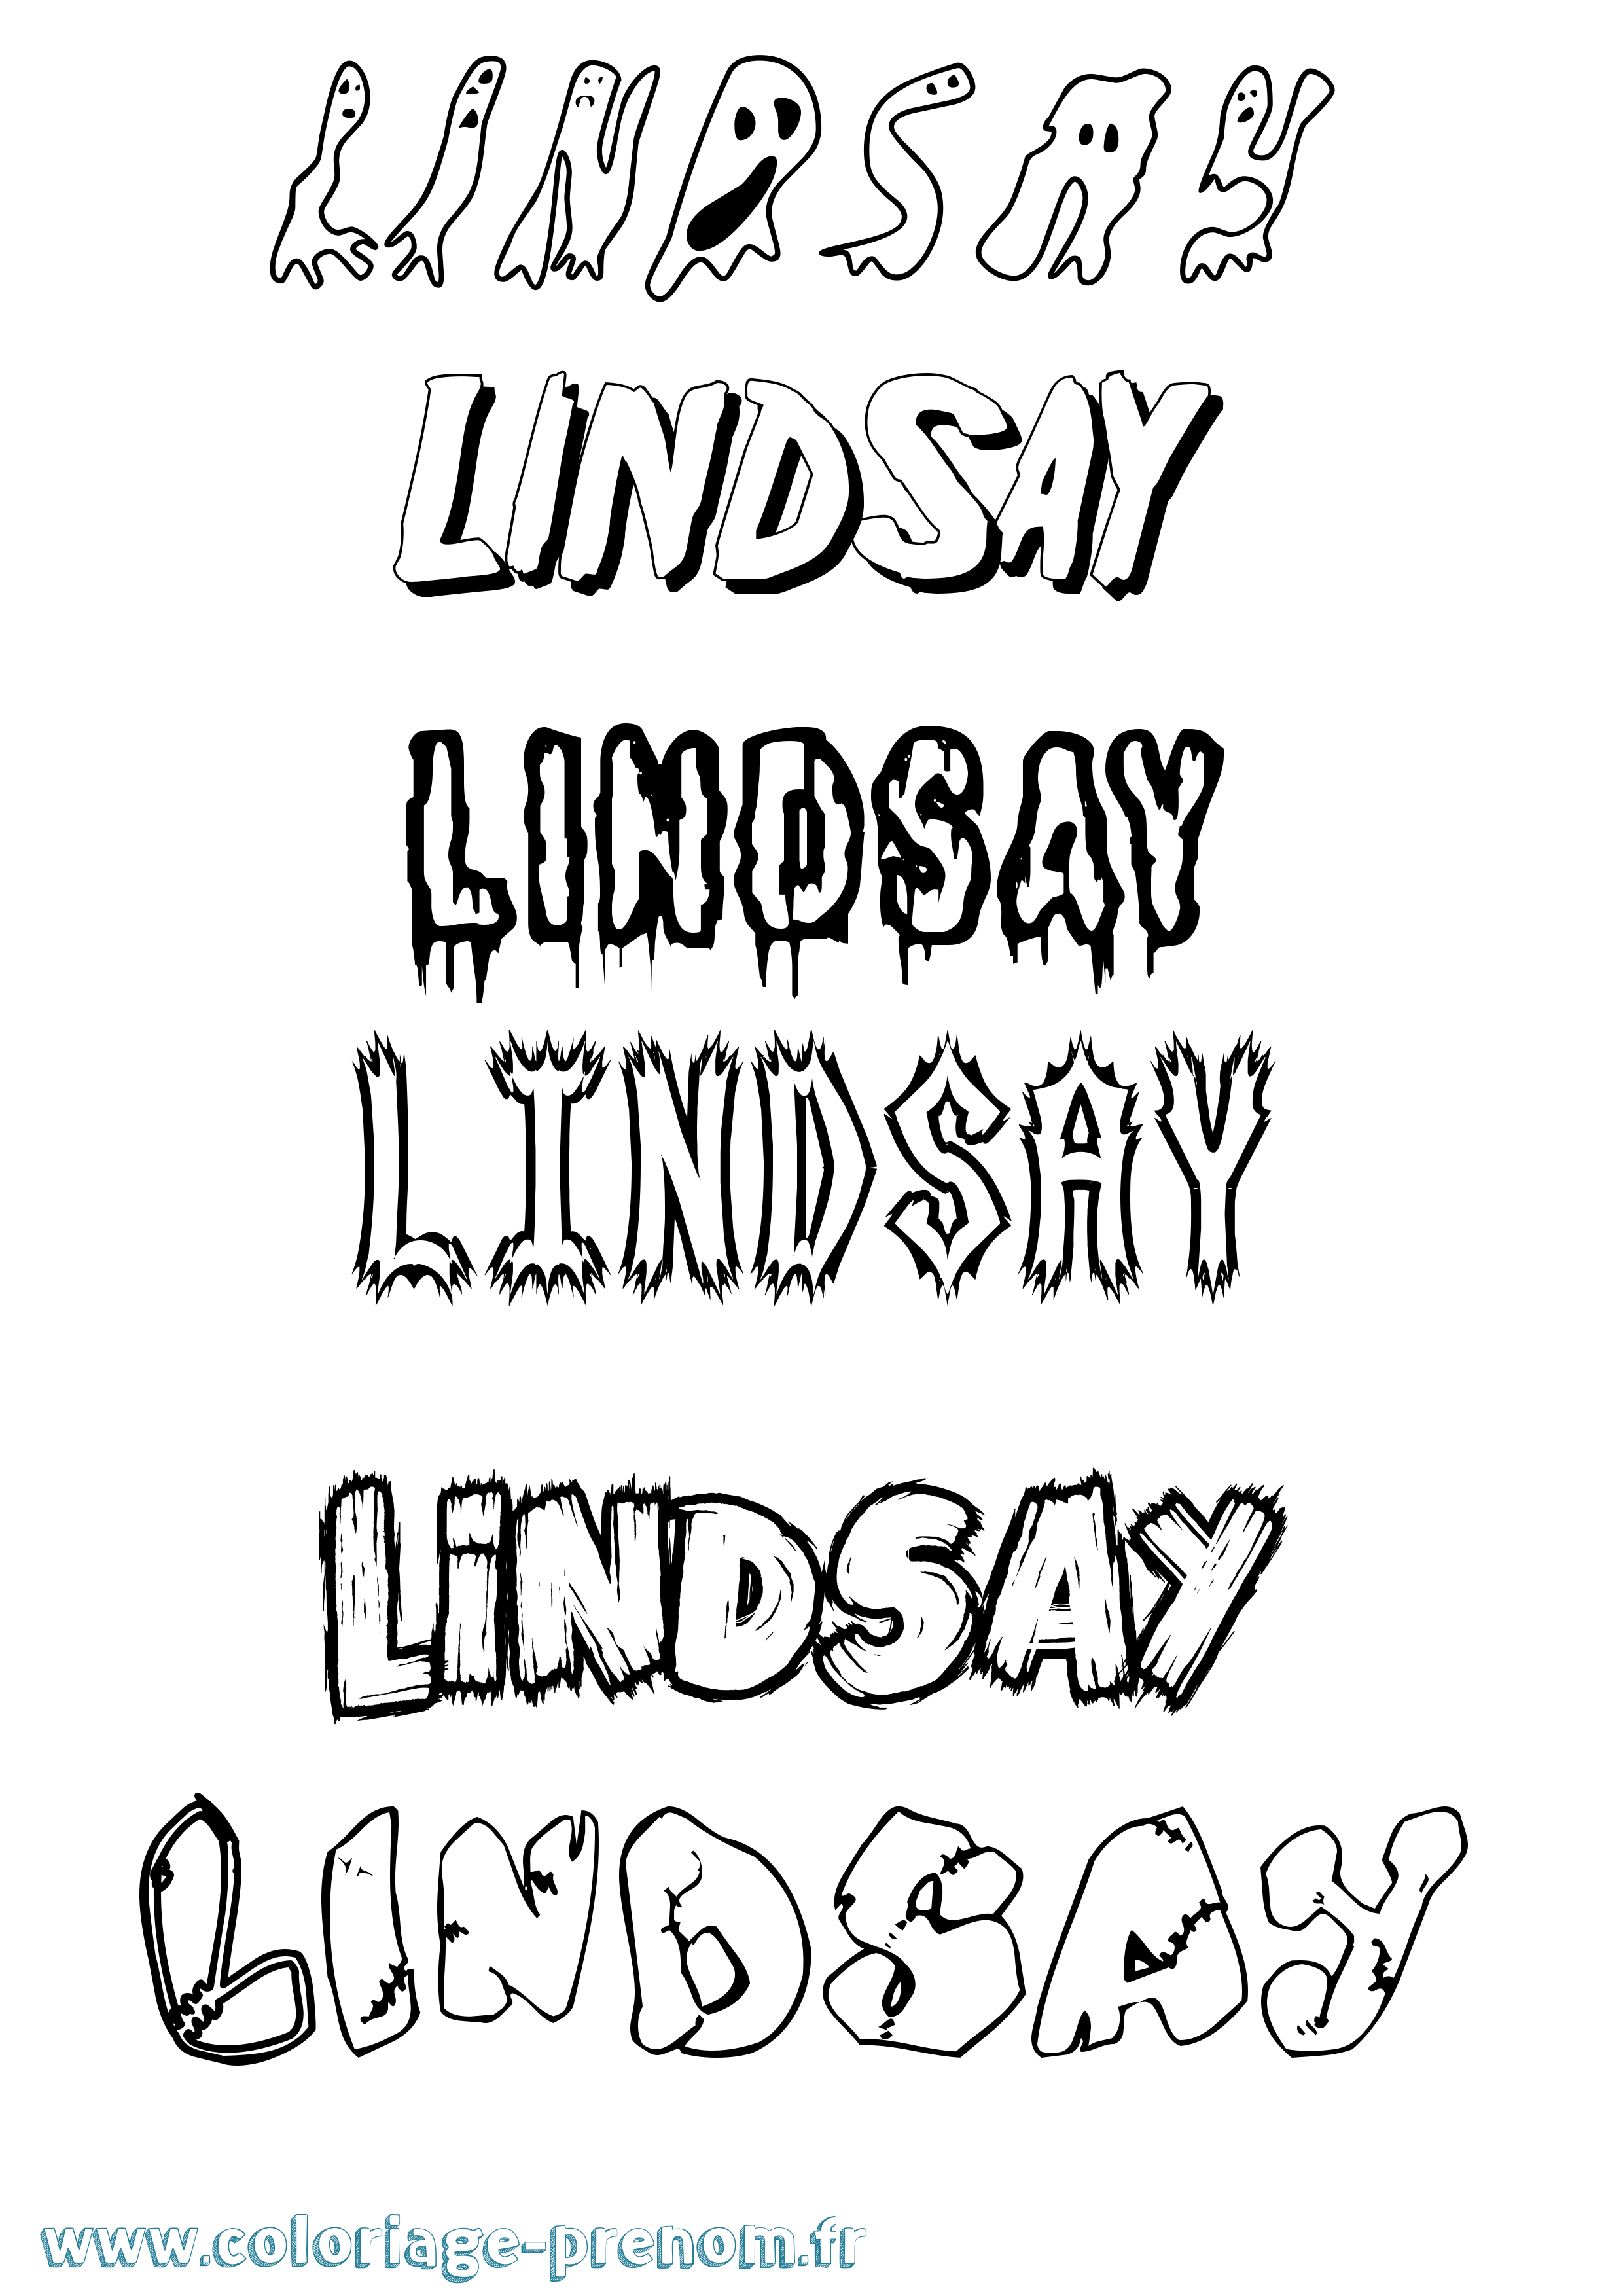 Coloriage prénom Lindsay